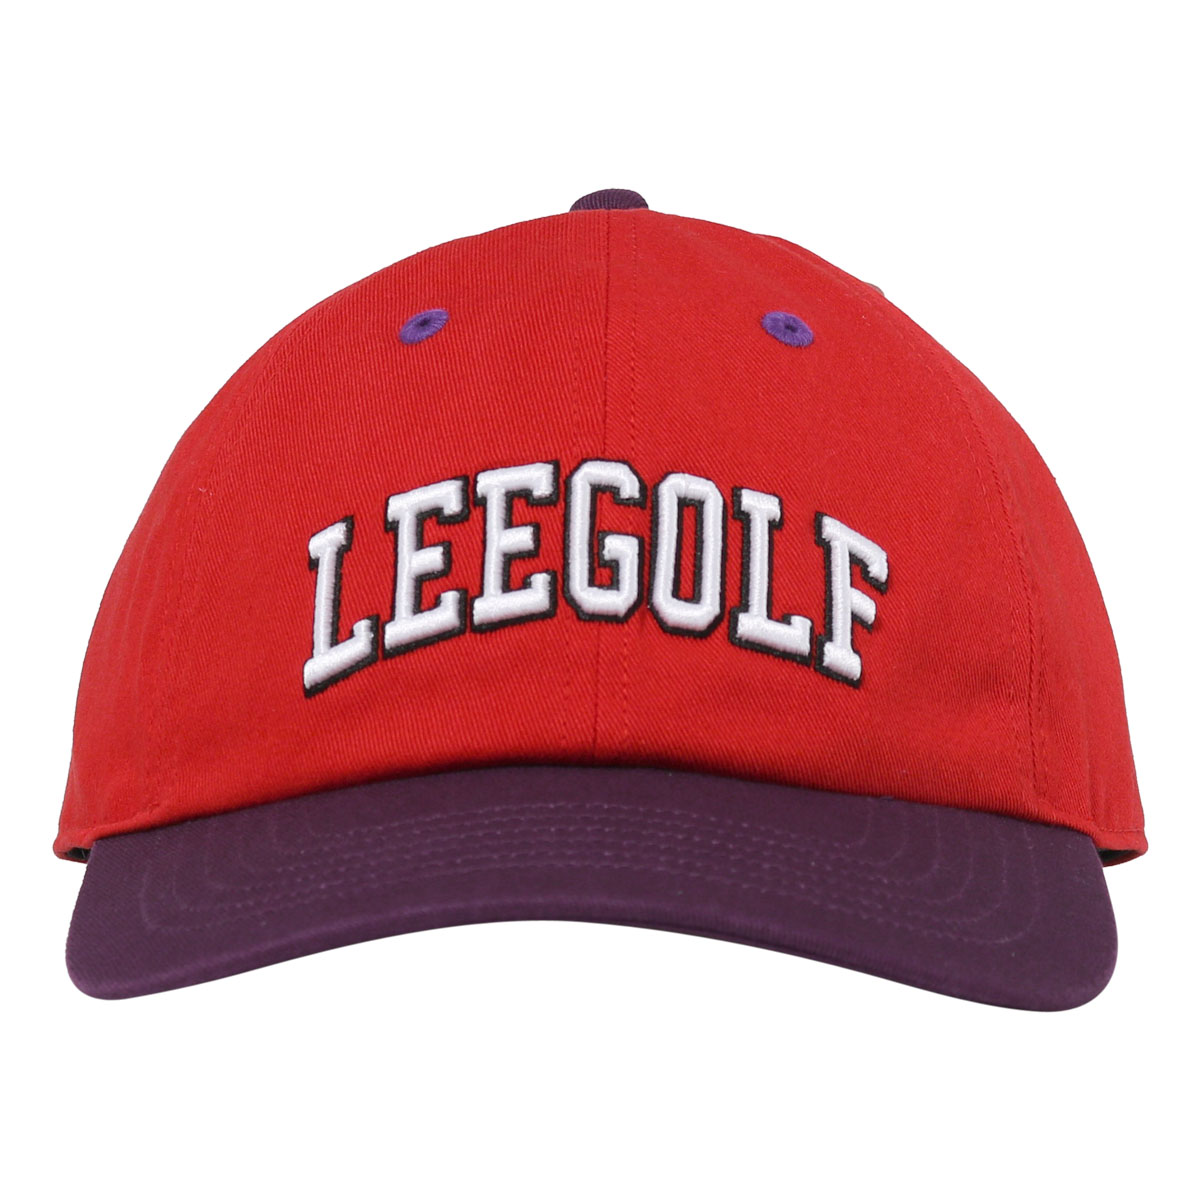 Lee ゴルフ キャップ 帽子 ロゴ メンズ レディース LG4005 リー サイズ調整可能